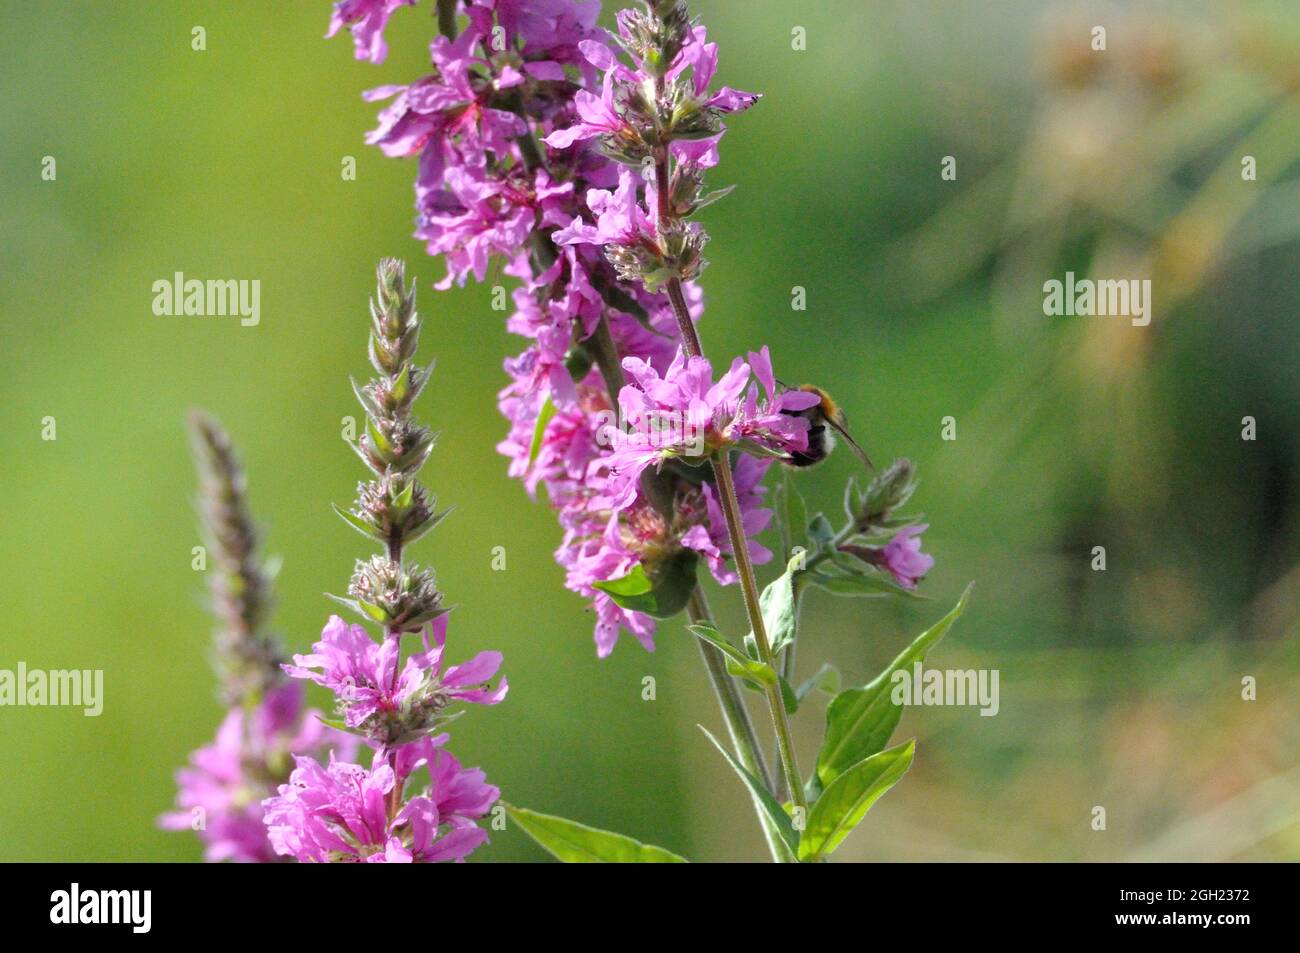 Gewöhnlicher Blutweiderich (Lythrum salicaria) im Garten an einem künstlichen Gartenteich lädt Insekten (hier Bienen) zum Naschen ein. - le violet se desserre Banque D'Images